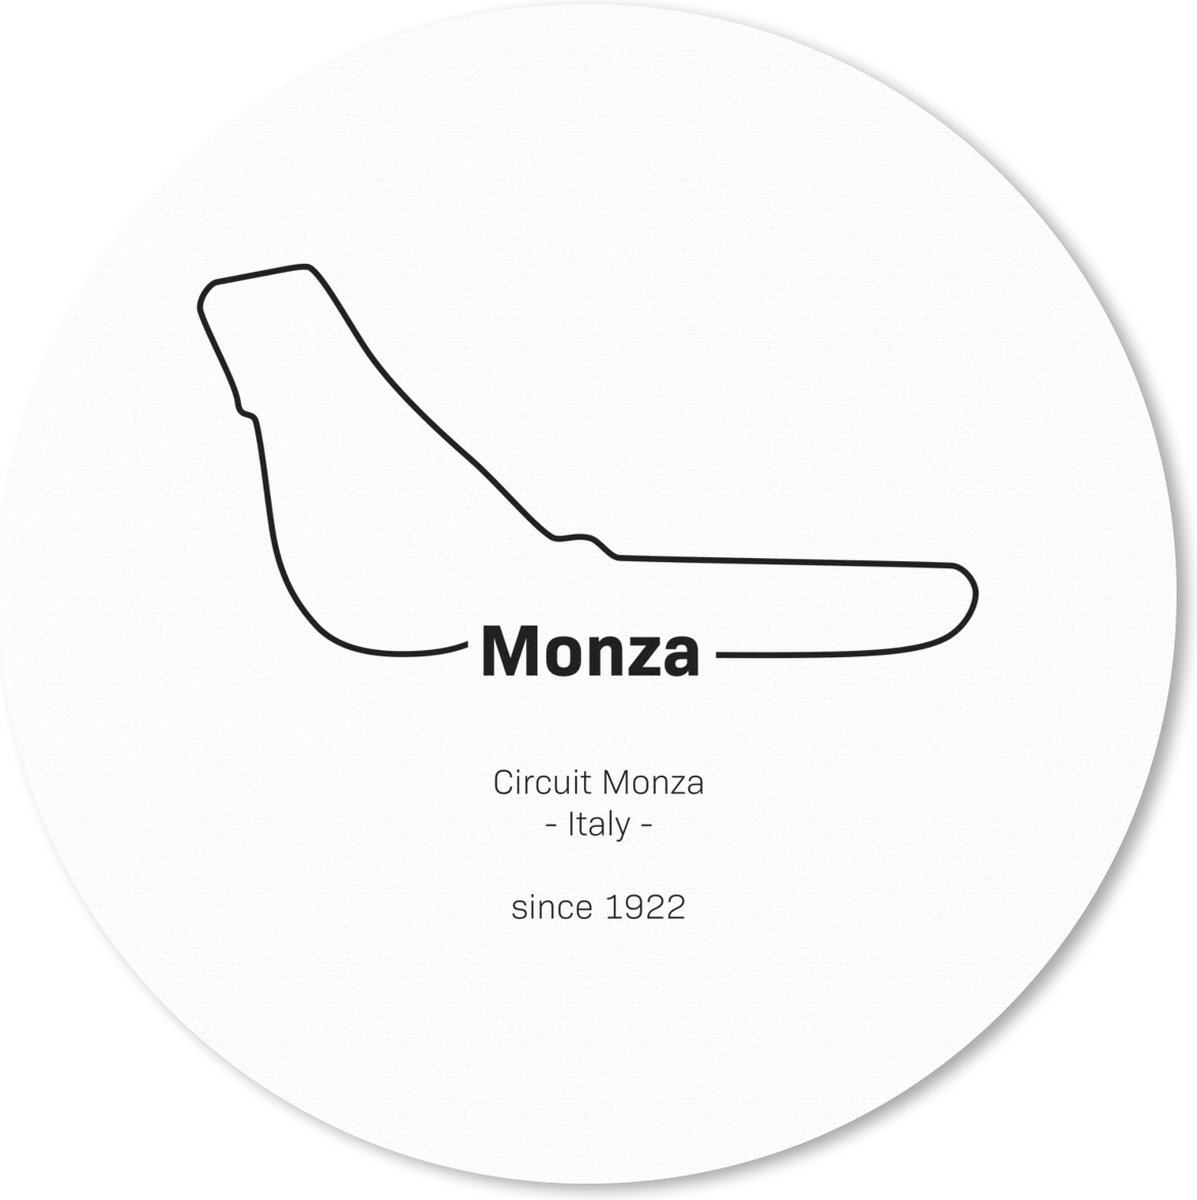 Muismat - Mousepad - Rond - Monza - Formule 1 - Circuit - 30x30 cm - Ronde muismat - Cadeau voor man